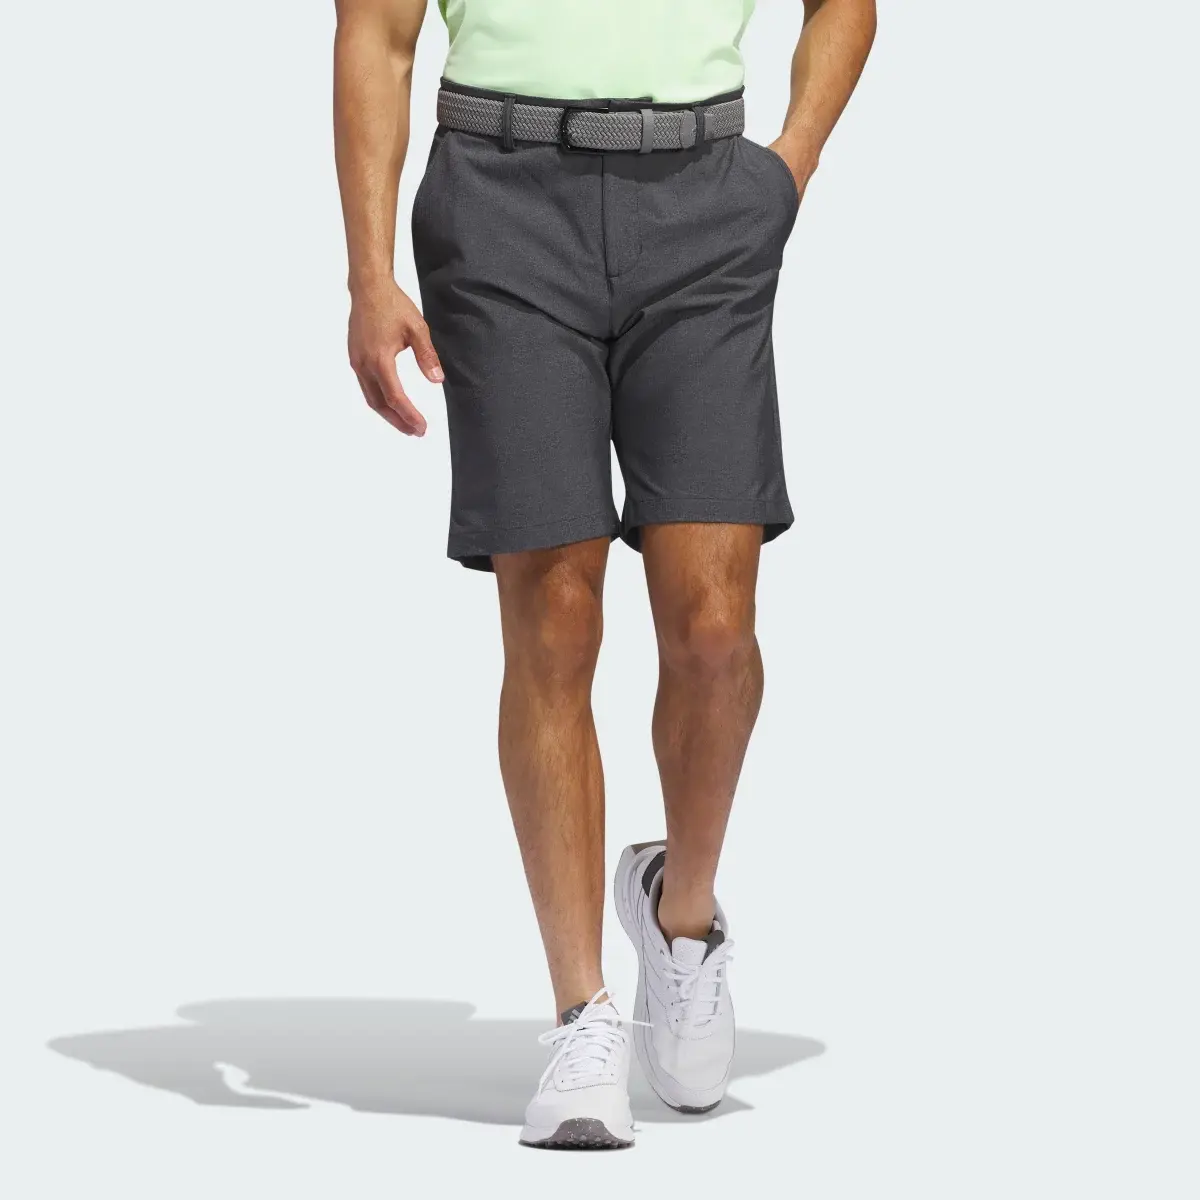 Adidas Ultimate365 Printed Shorts. 1